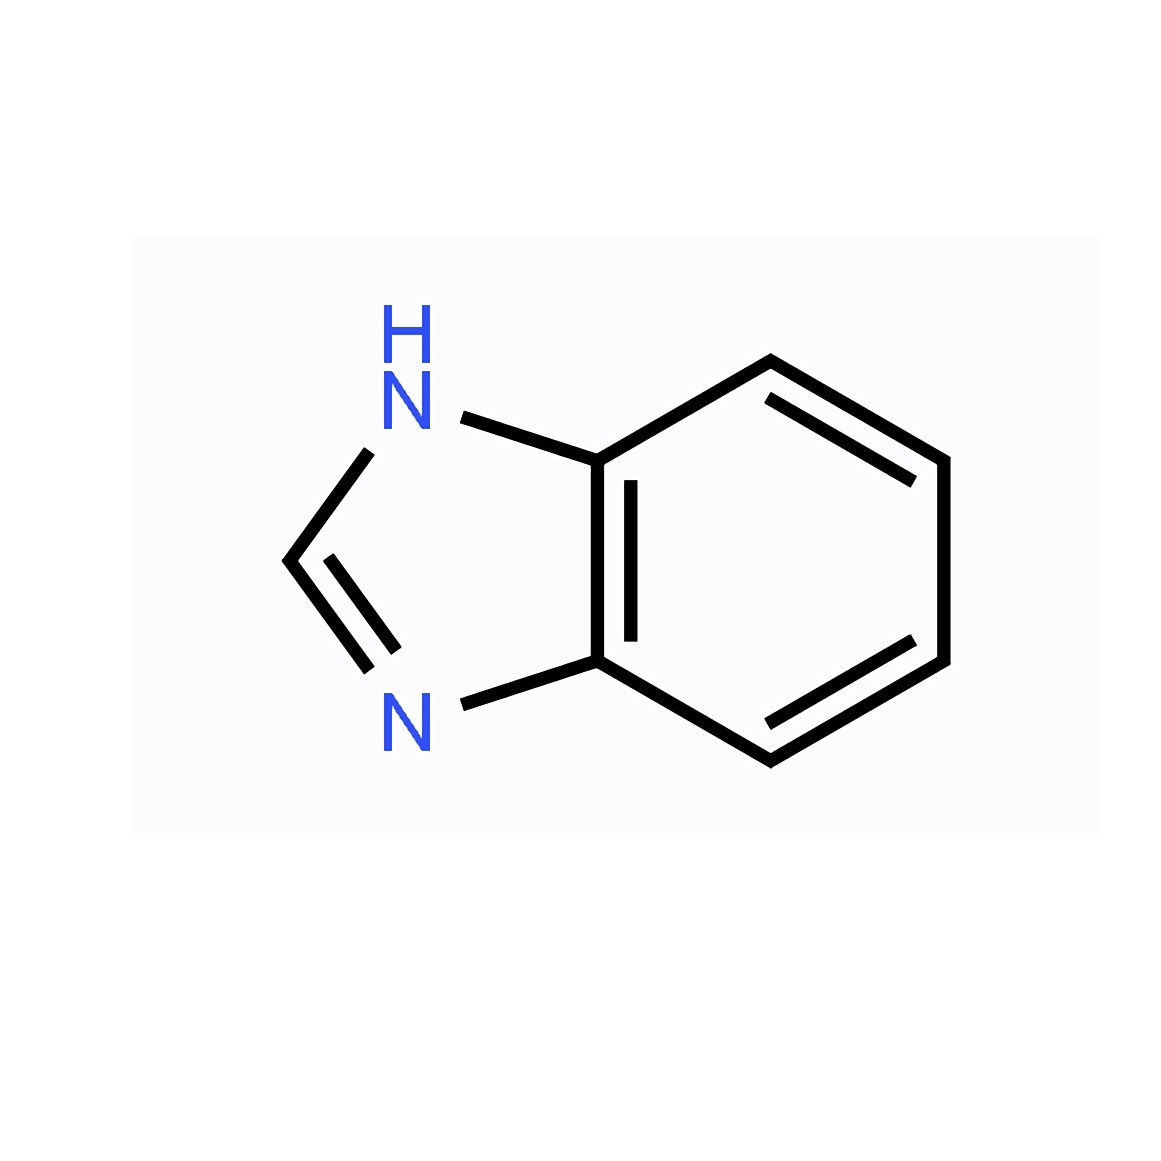 ベンゾイミダゾール 100g C7H6N2 複素環式化合物 有機化合物 試薬 化学薬品 販売 購入